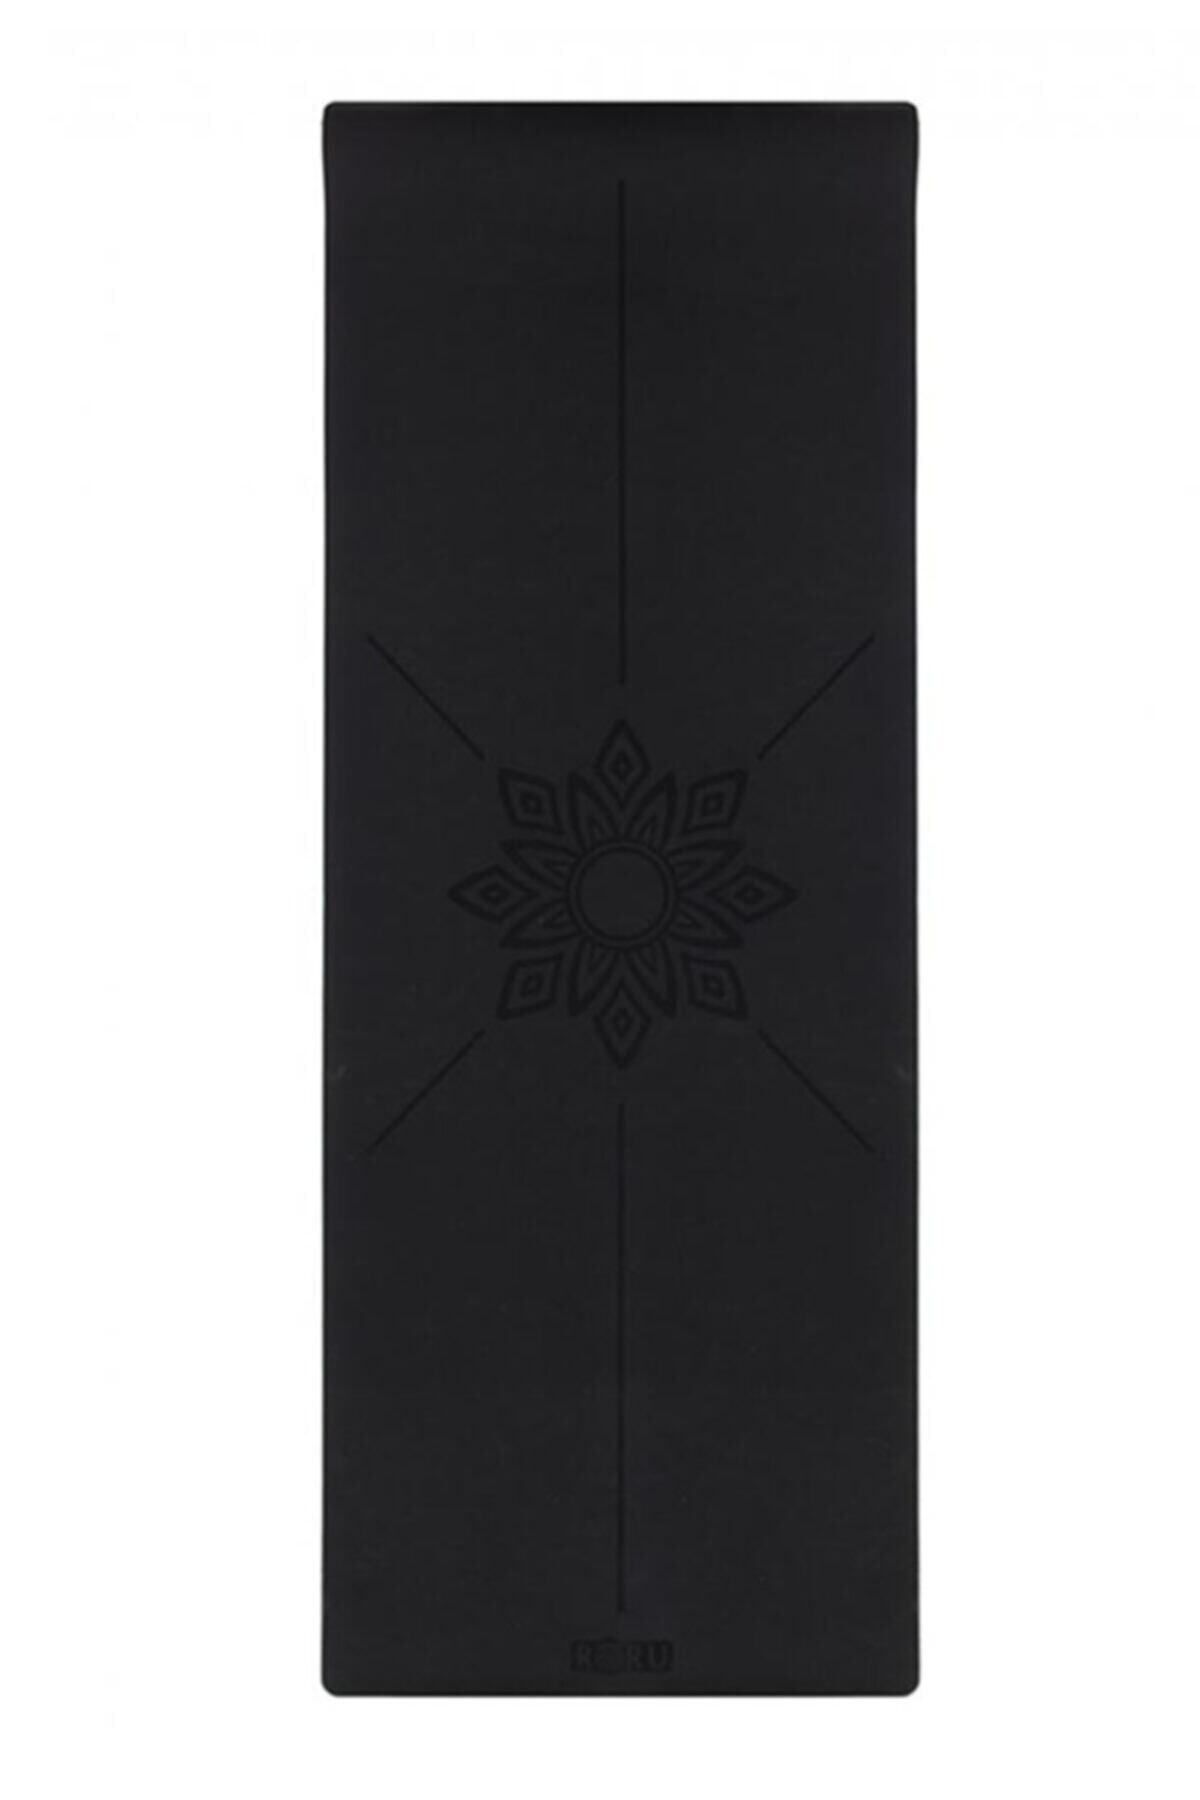 Roru Concept Sun Kaydırmaz Yoga Egzersiz Matı 183 X 68 Cm 5 Mm Kuru - Nemli Eller Için, Doğal Kauçuk, Siyah